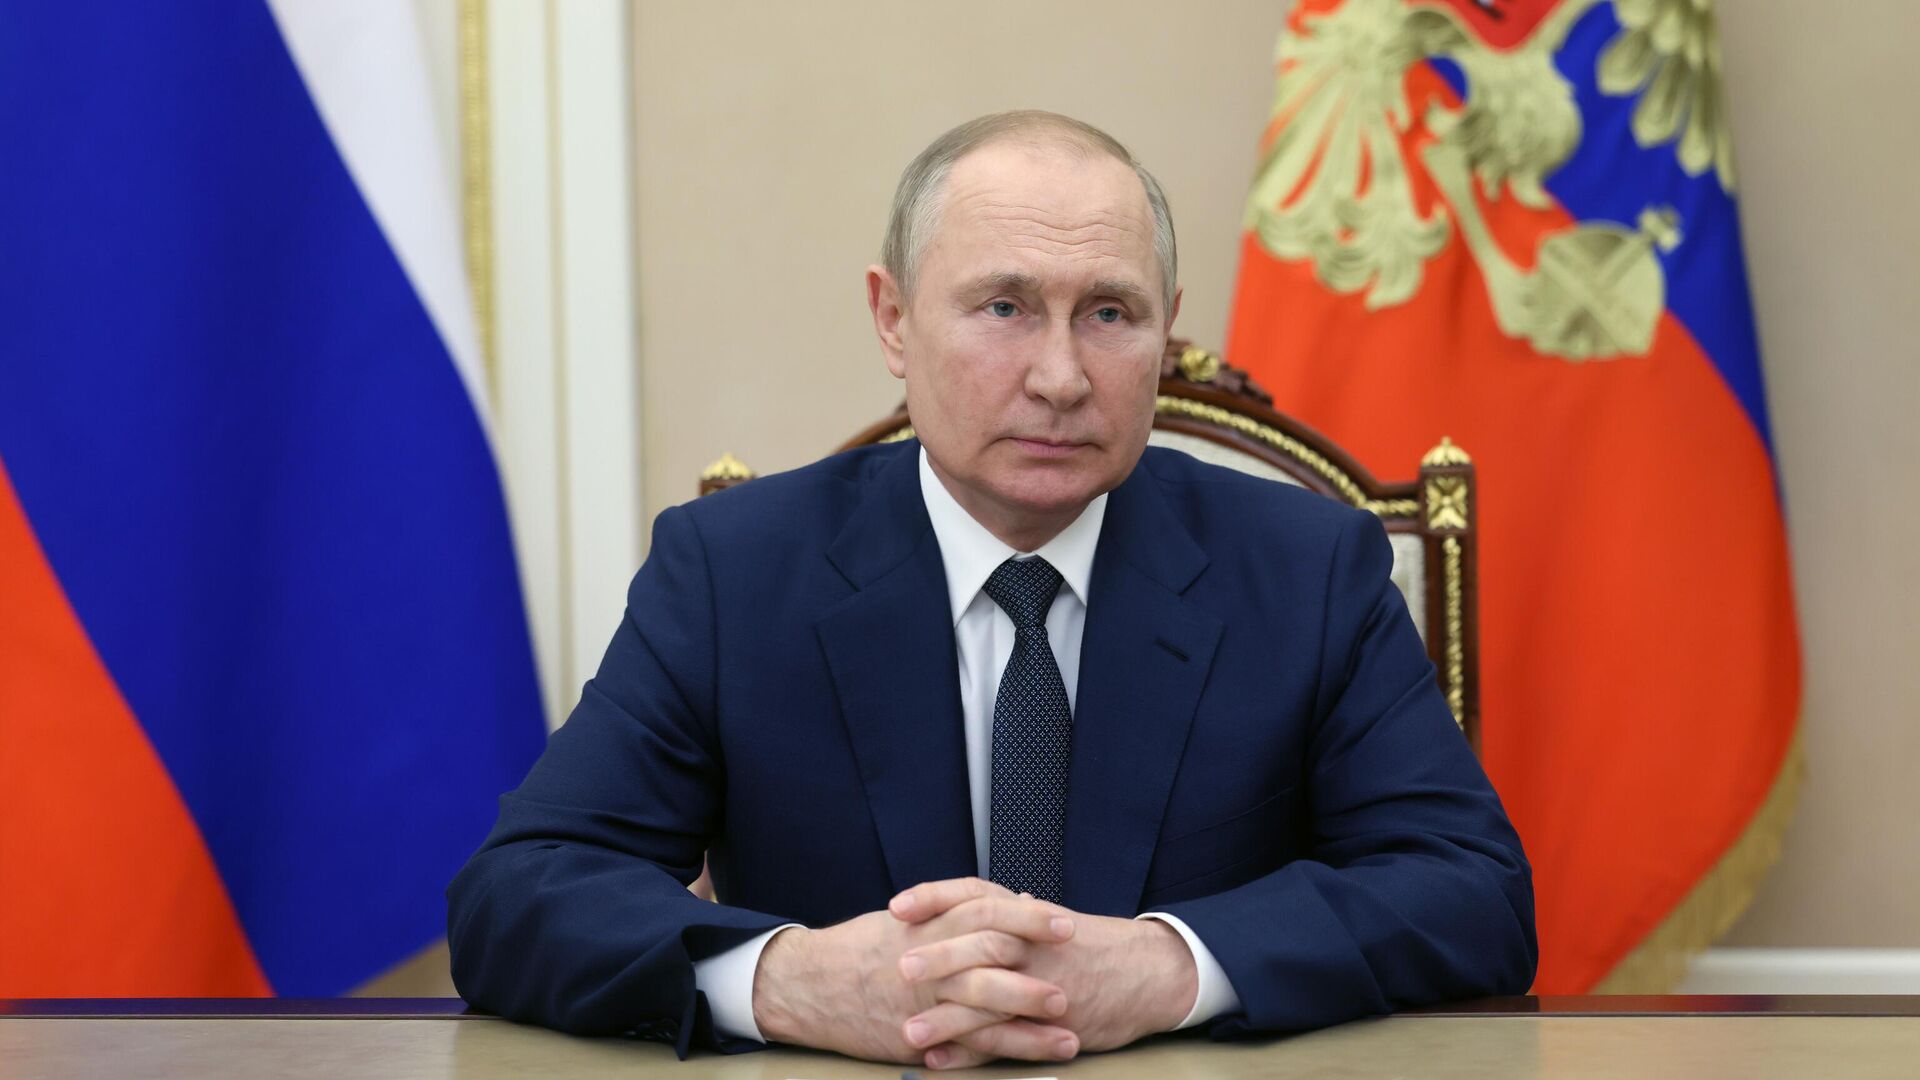 Мирзиёев наградил Путина орденом Высшей степени